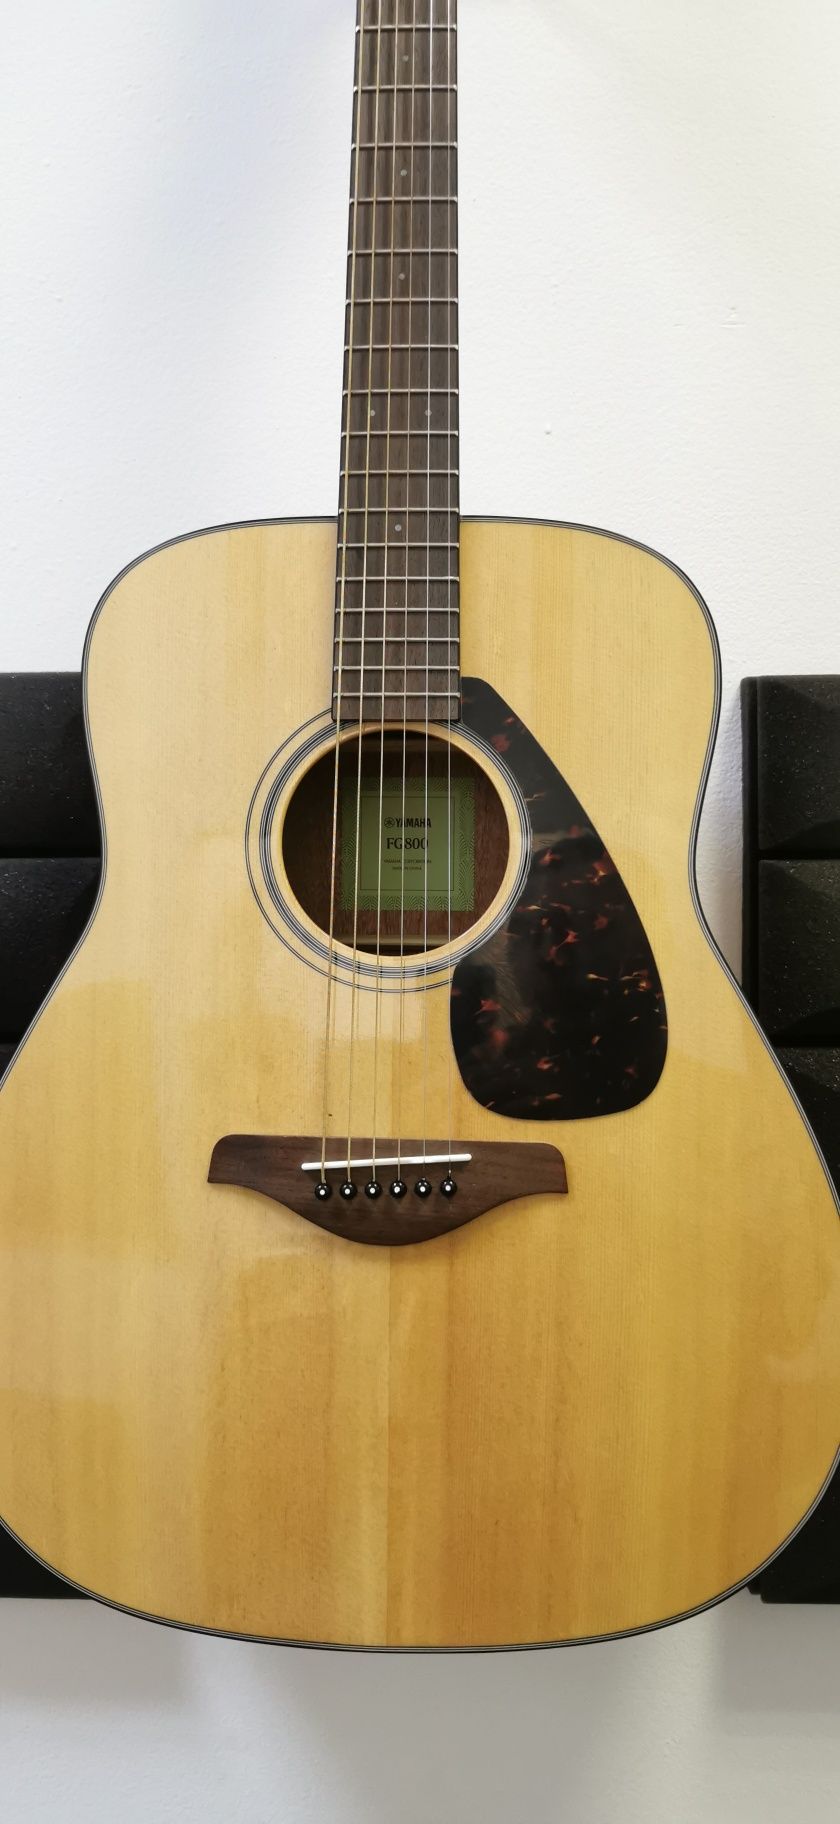 Акустическая гитара YAMAHA FG 800, Новая в коробке